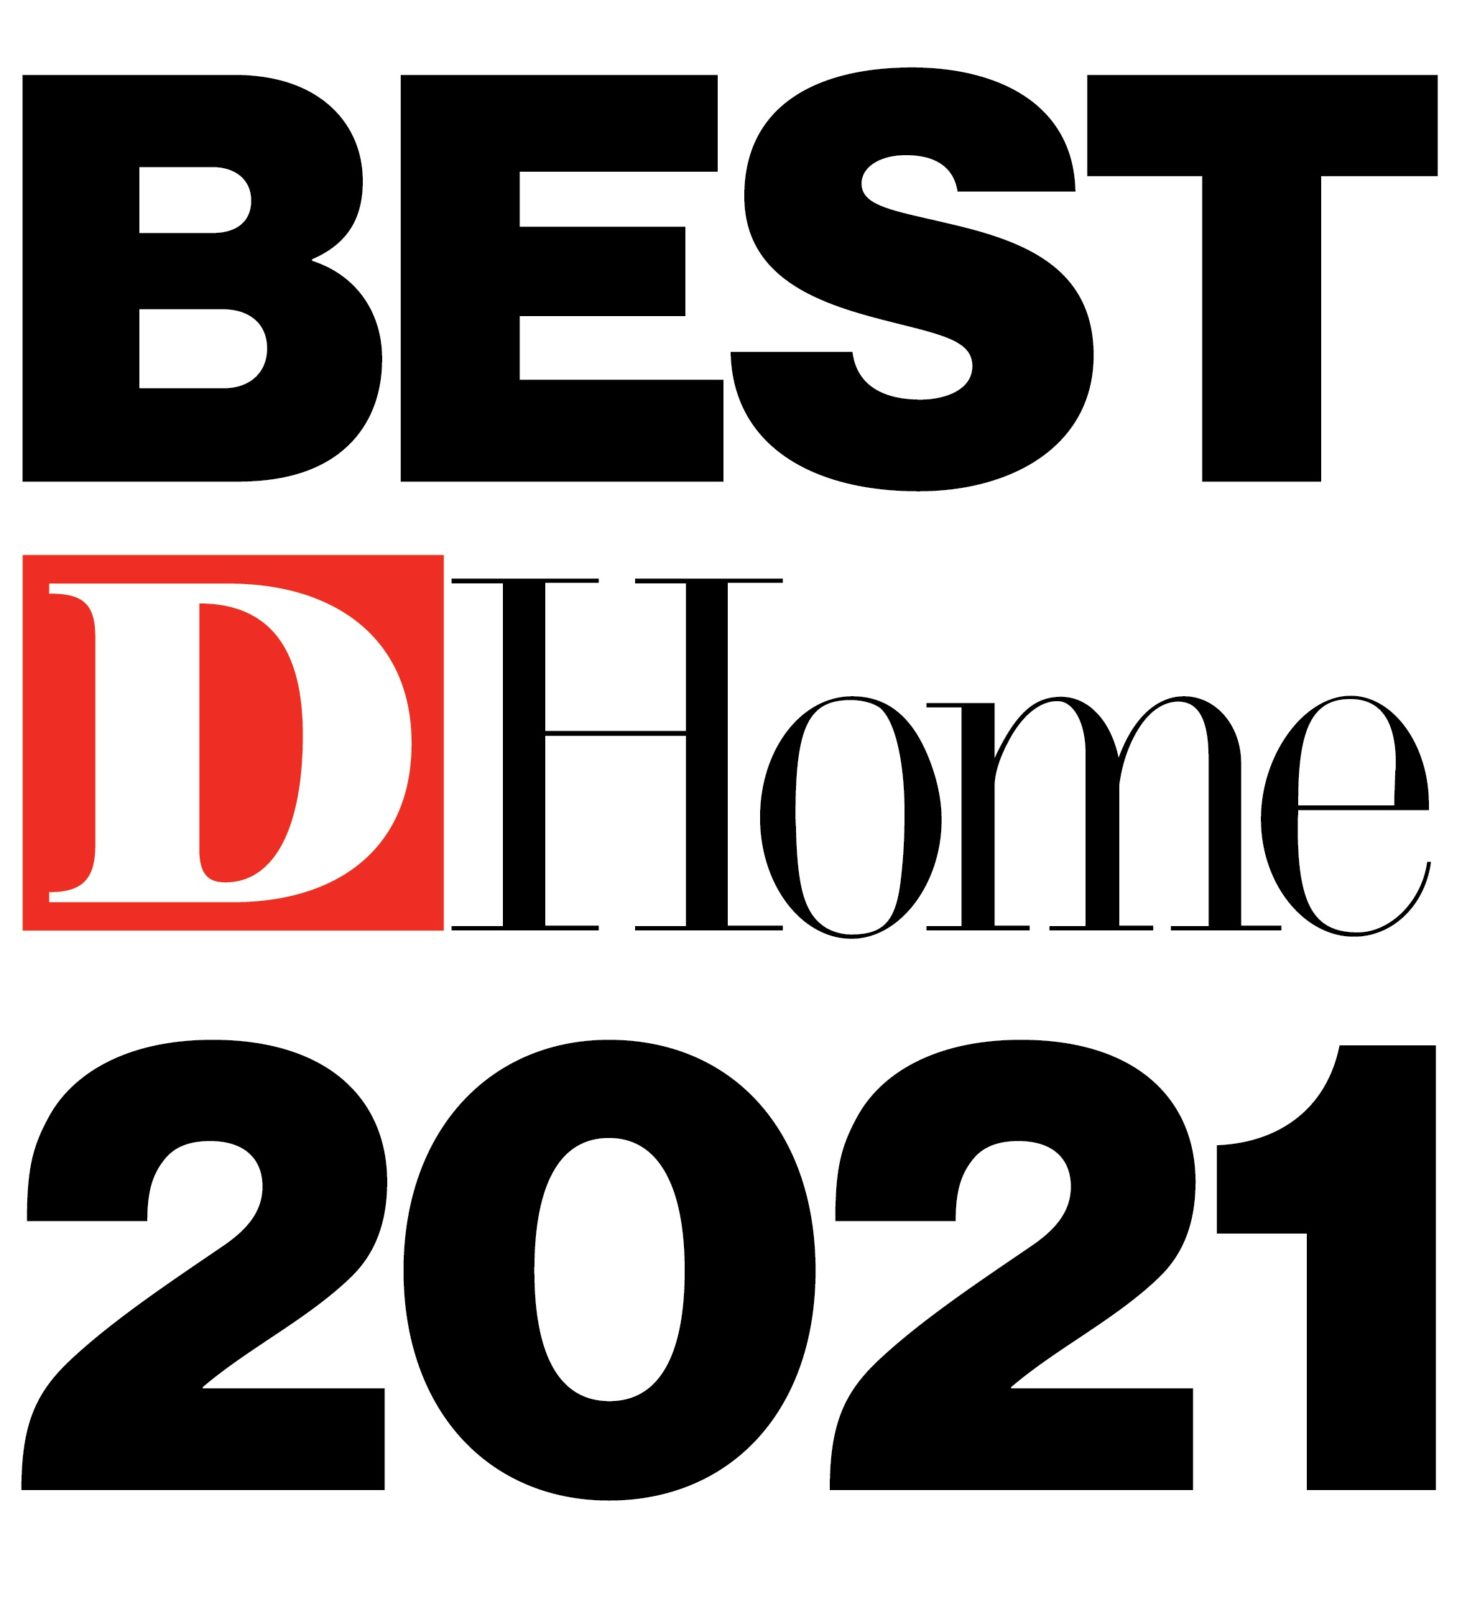 Baker Design Group - DHome 2021 Designer Of The Year Winner